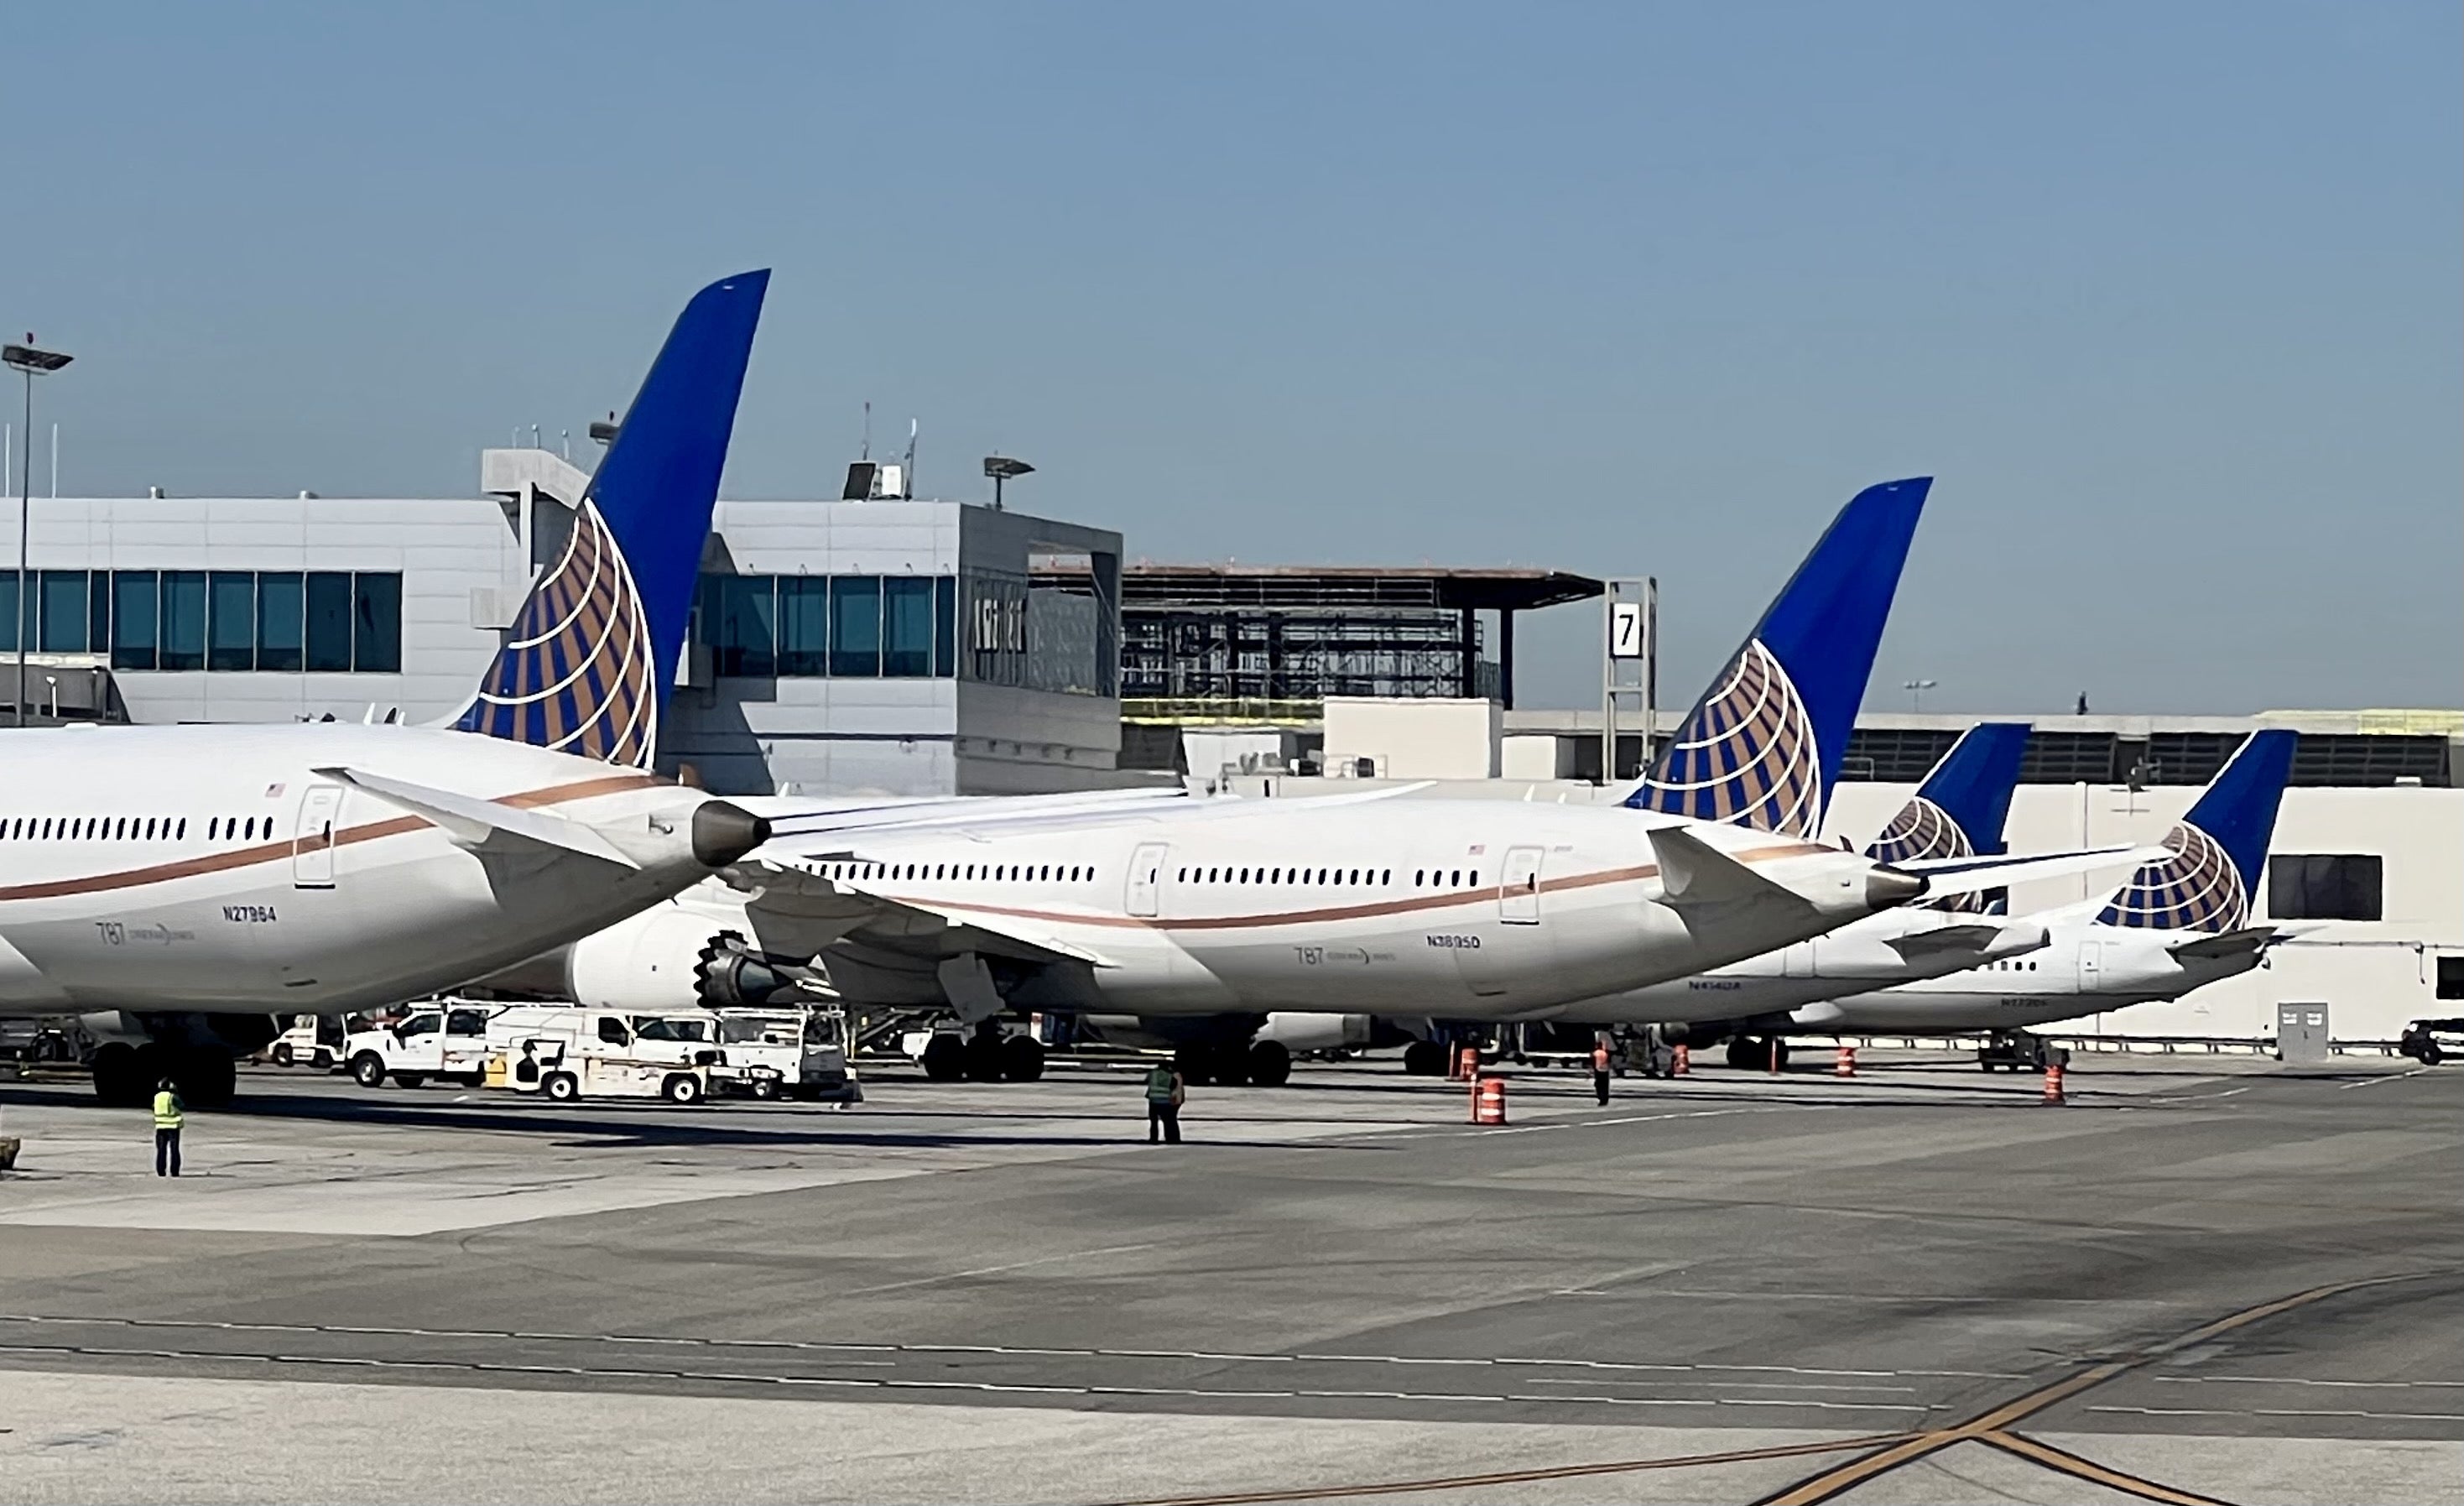 United Dreamliner aircraft at LAX